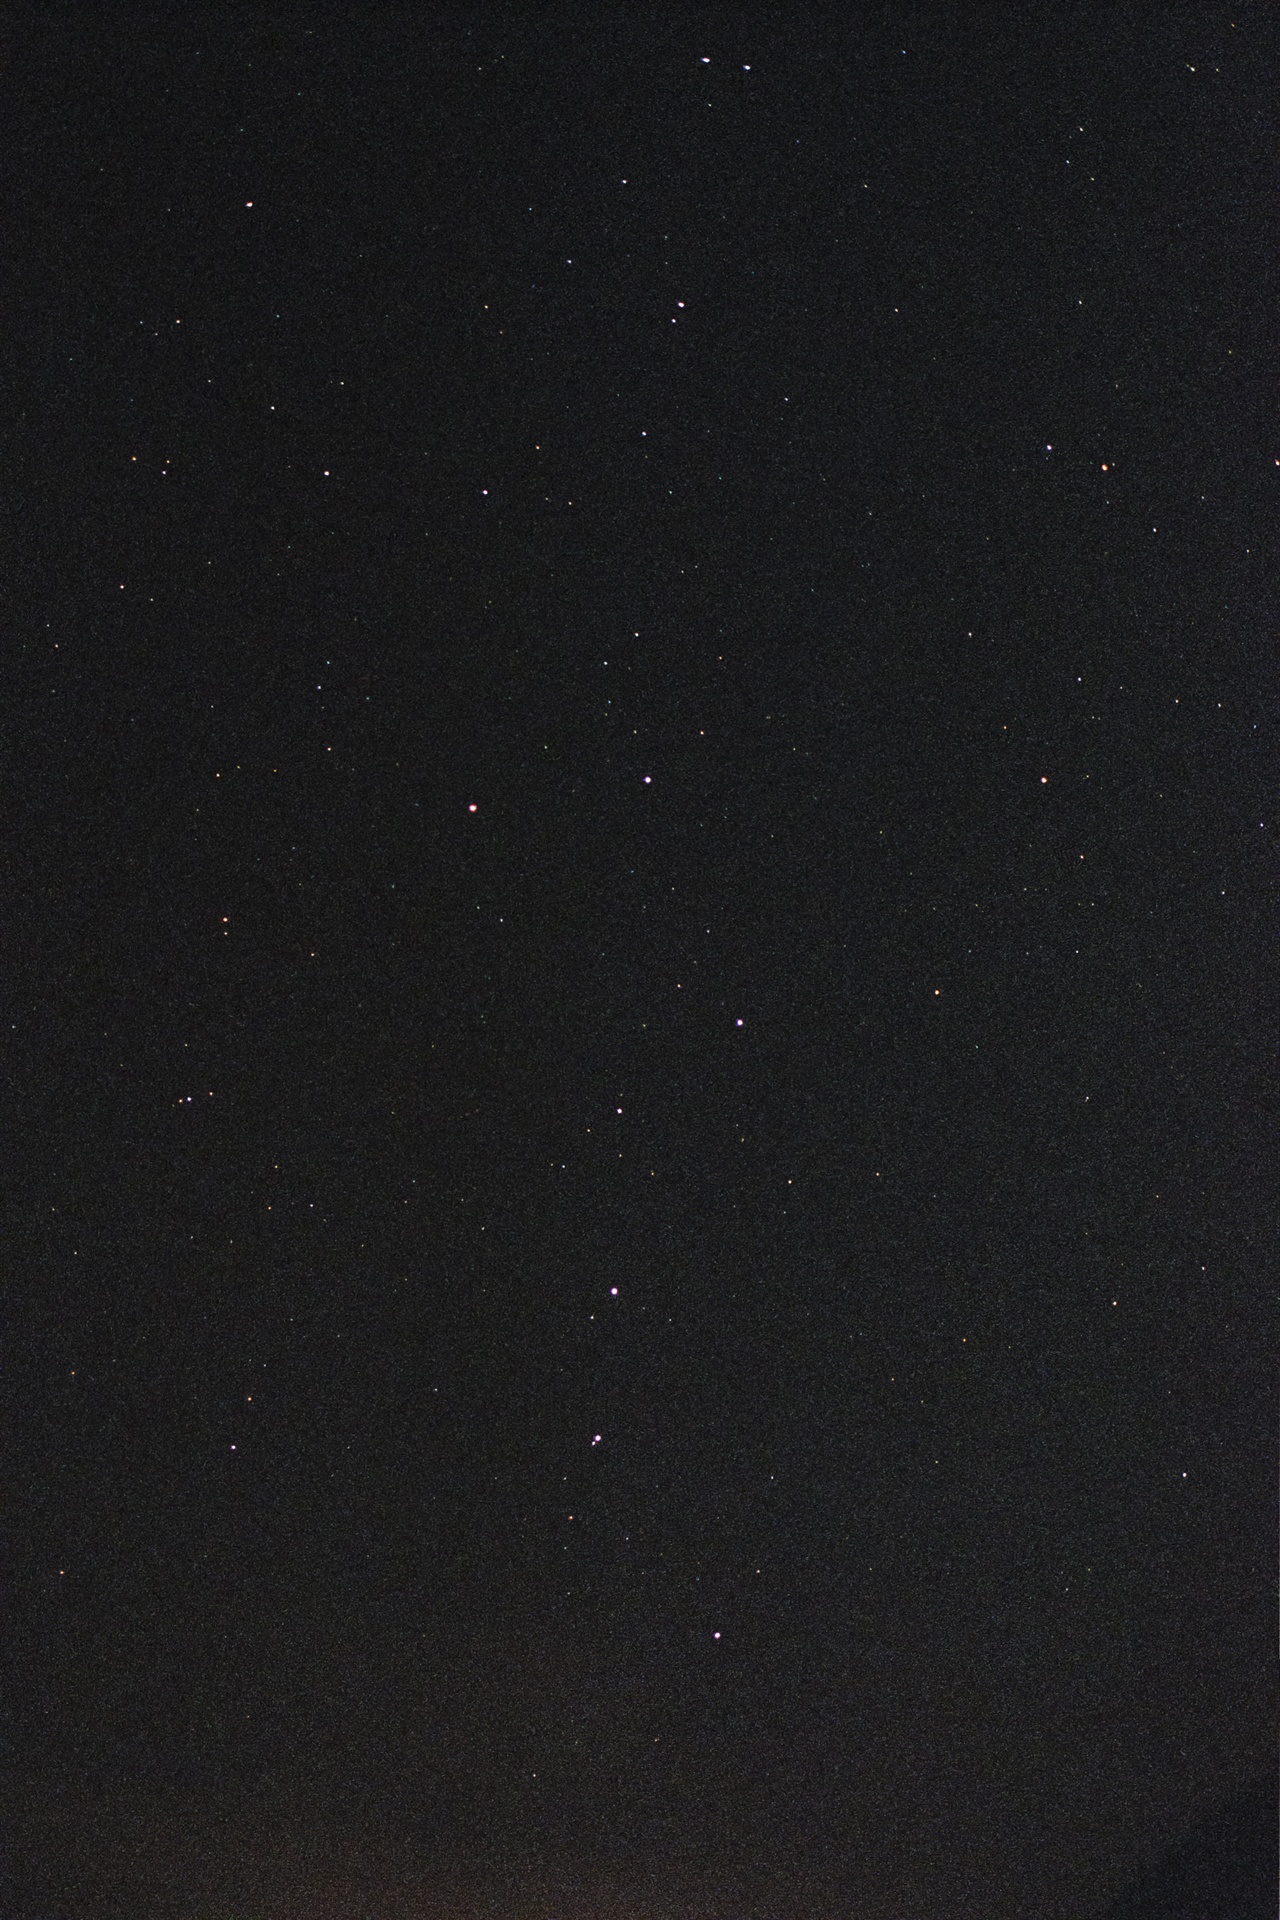 자정에 깨어 찍은 정선의 밤하늘이다. 필름의 감도는 1600. 조리개는 f2. 노출 시간은 15초를 주었다.(Netura1600)